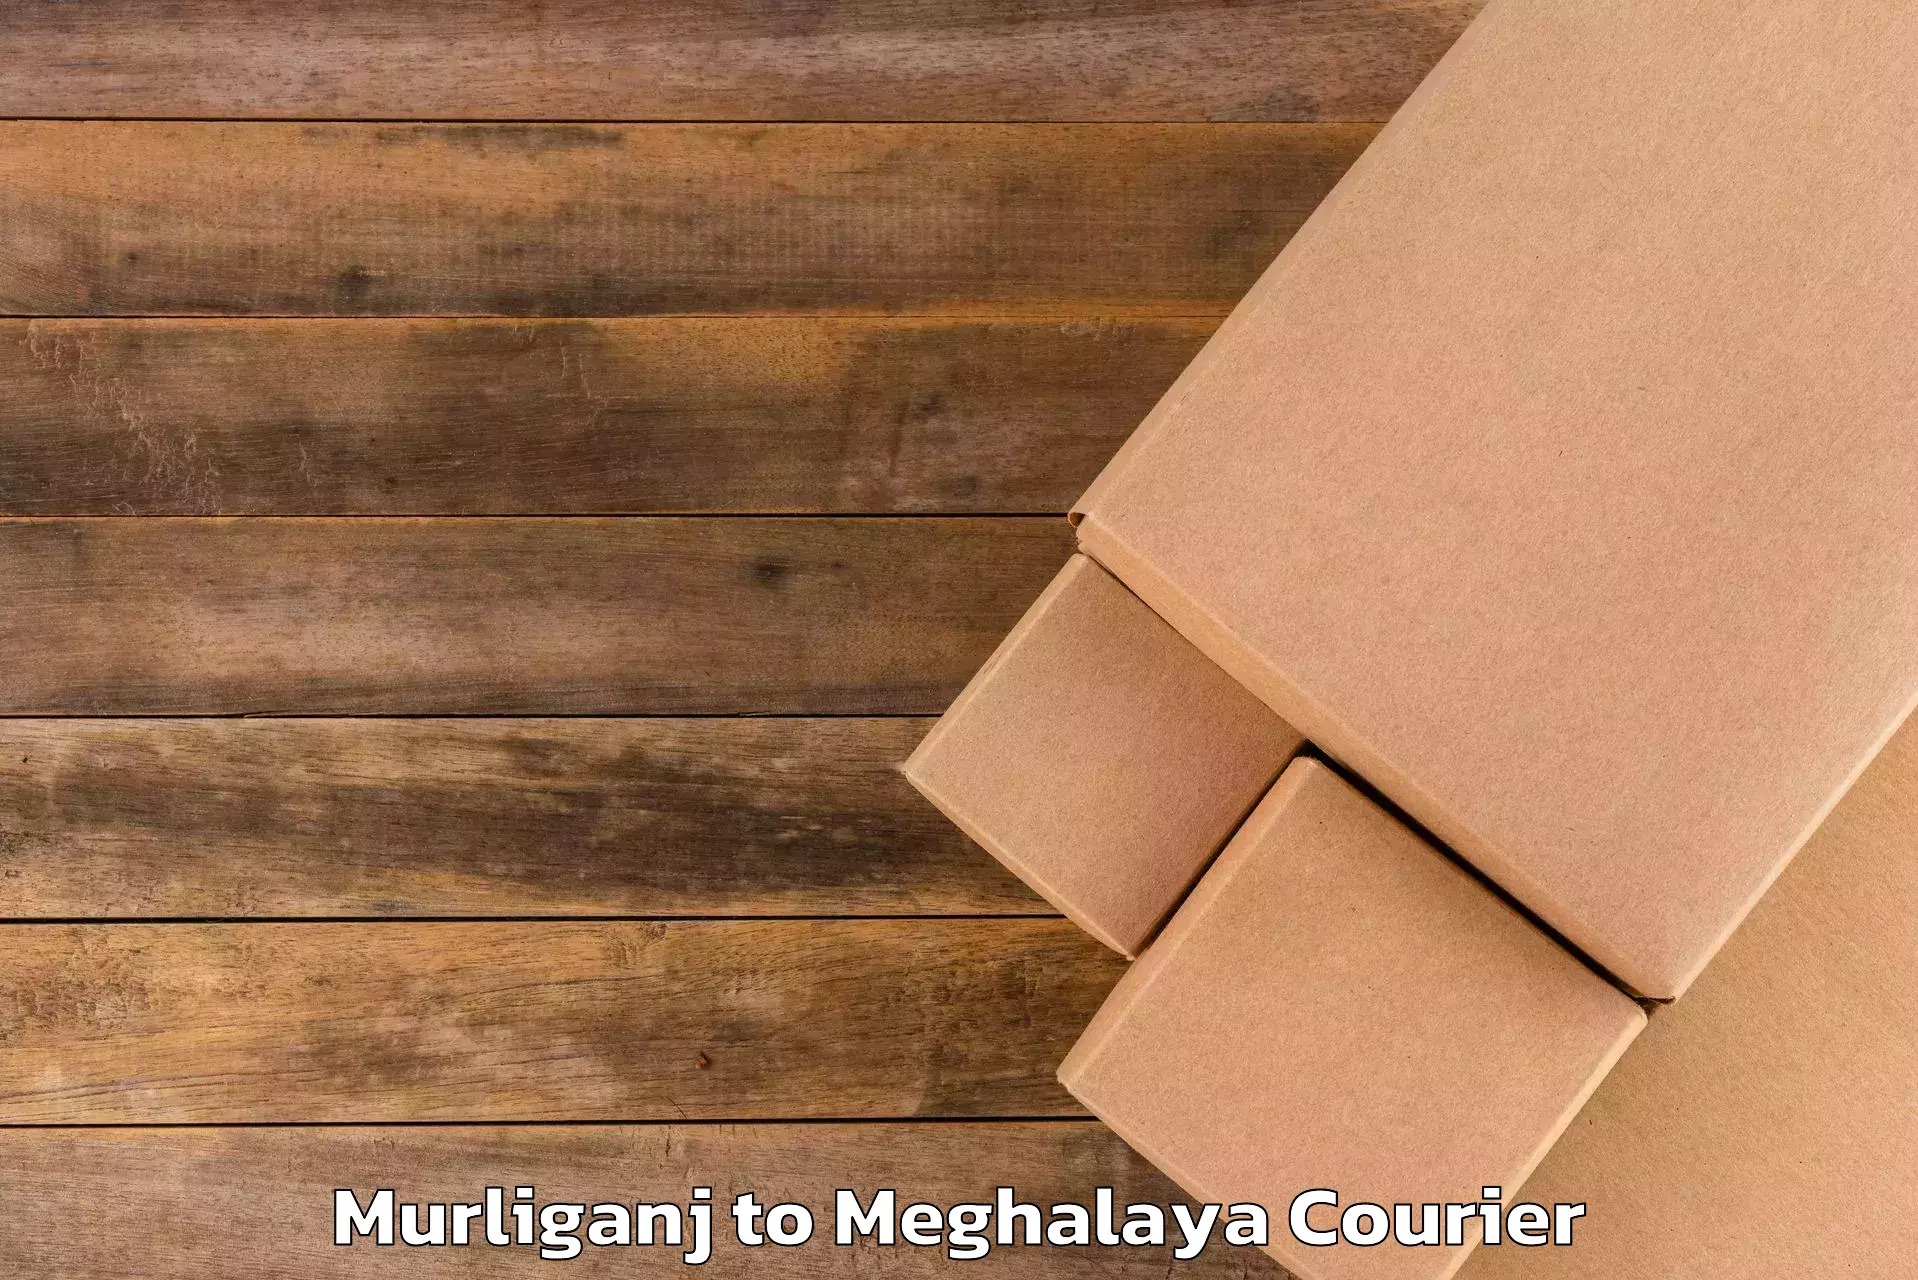 Baggage transport network Murliganj to Meghalaya